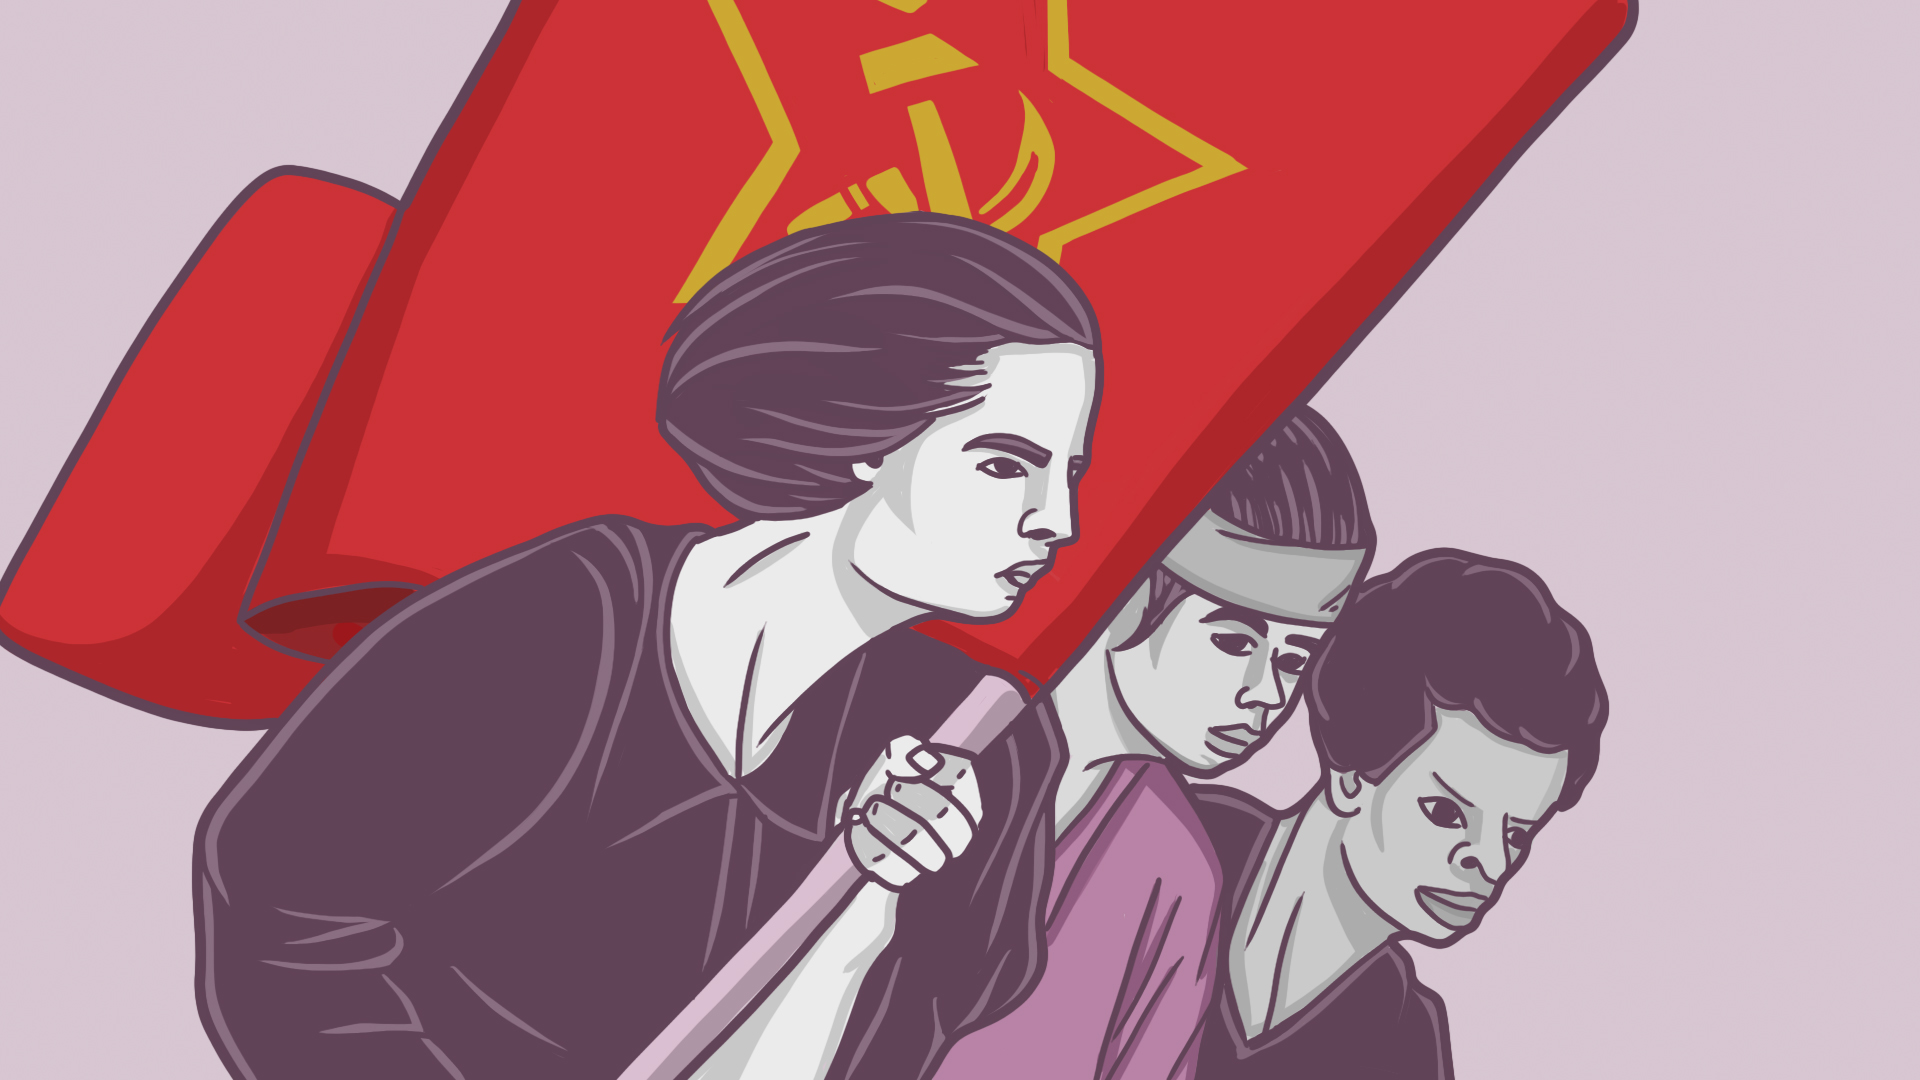 Heute vor 100 Jahren wurde die erste kommunistische Massenpartei gegründet